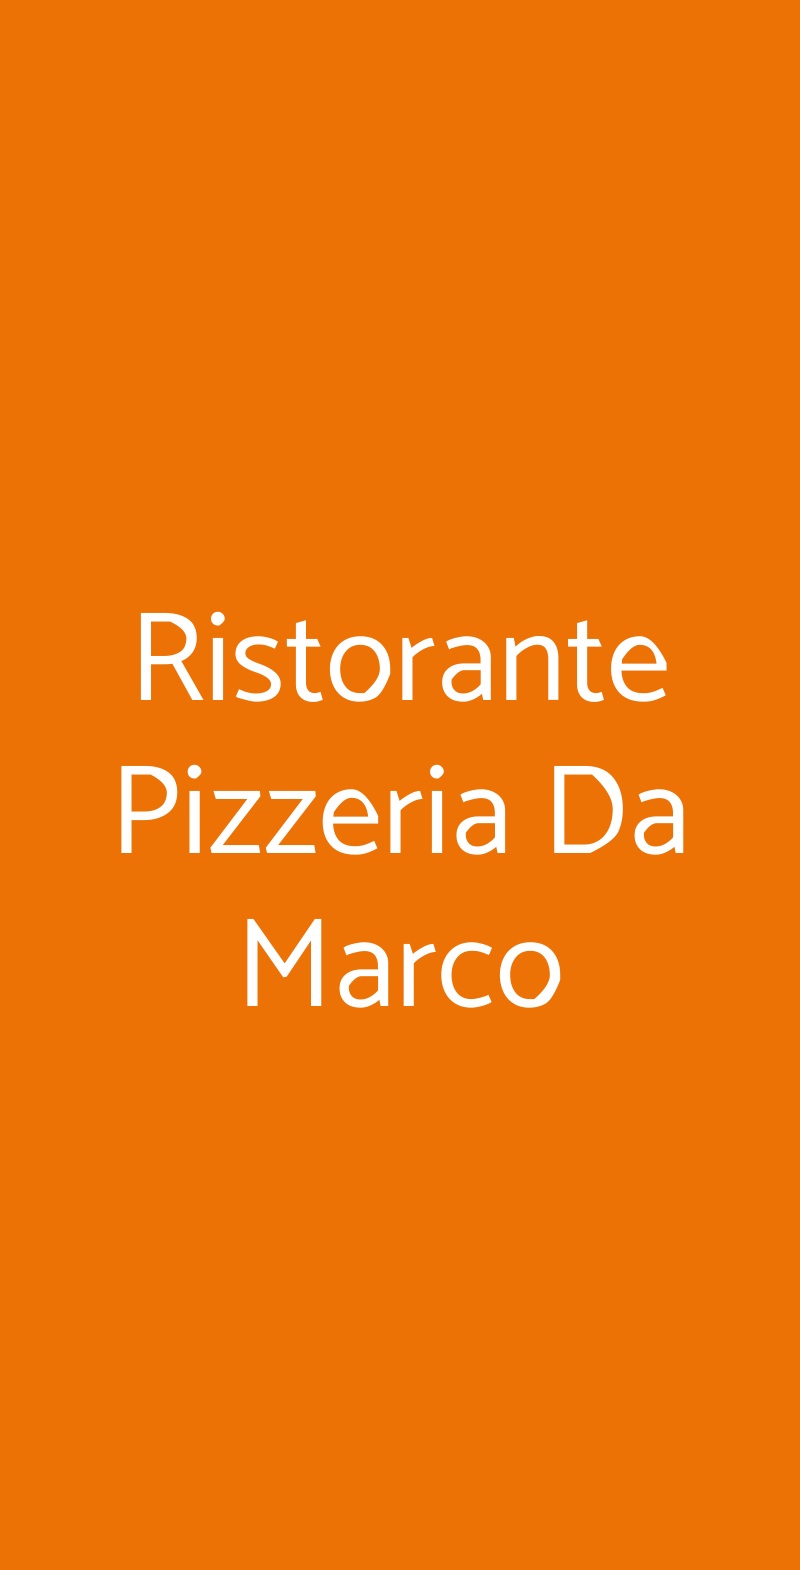 Ristorante Pizzeria Da Marco Rimini menù 1 pagina